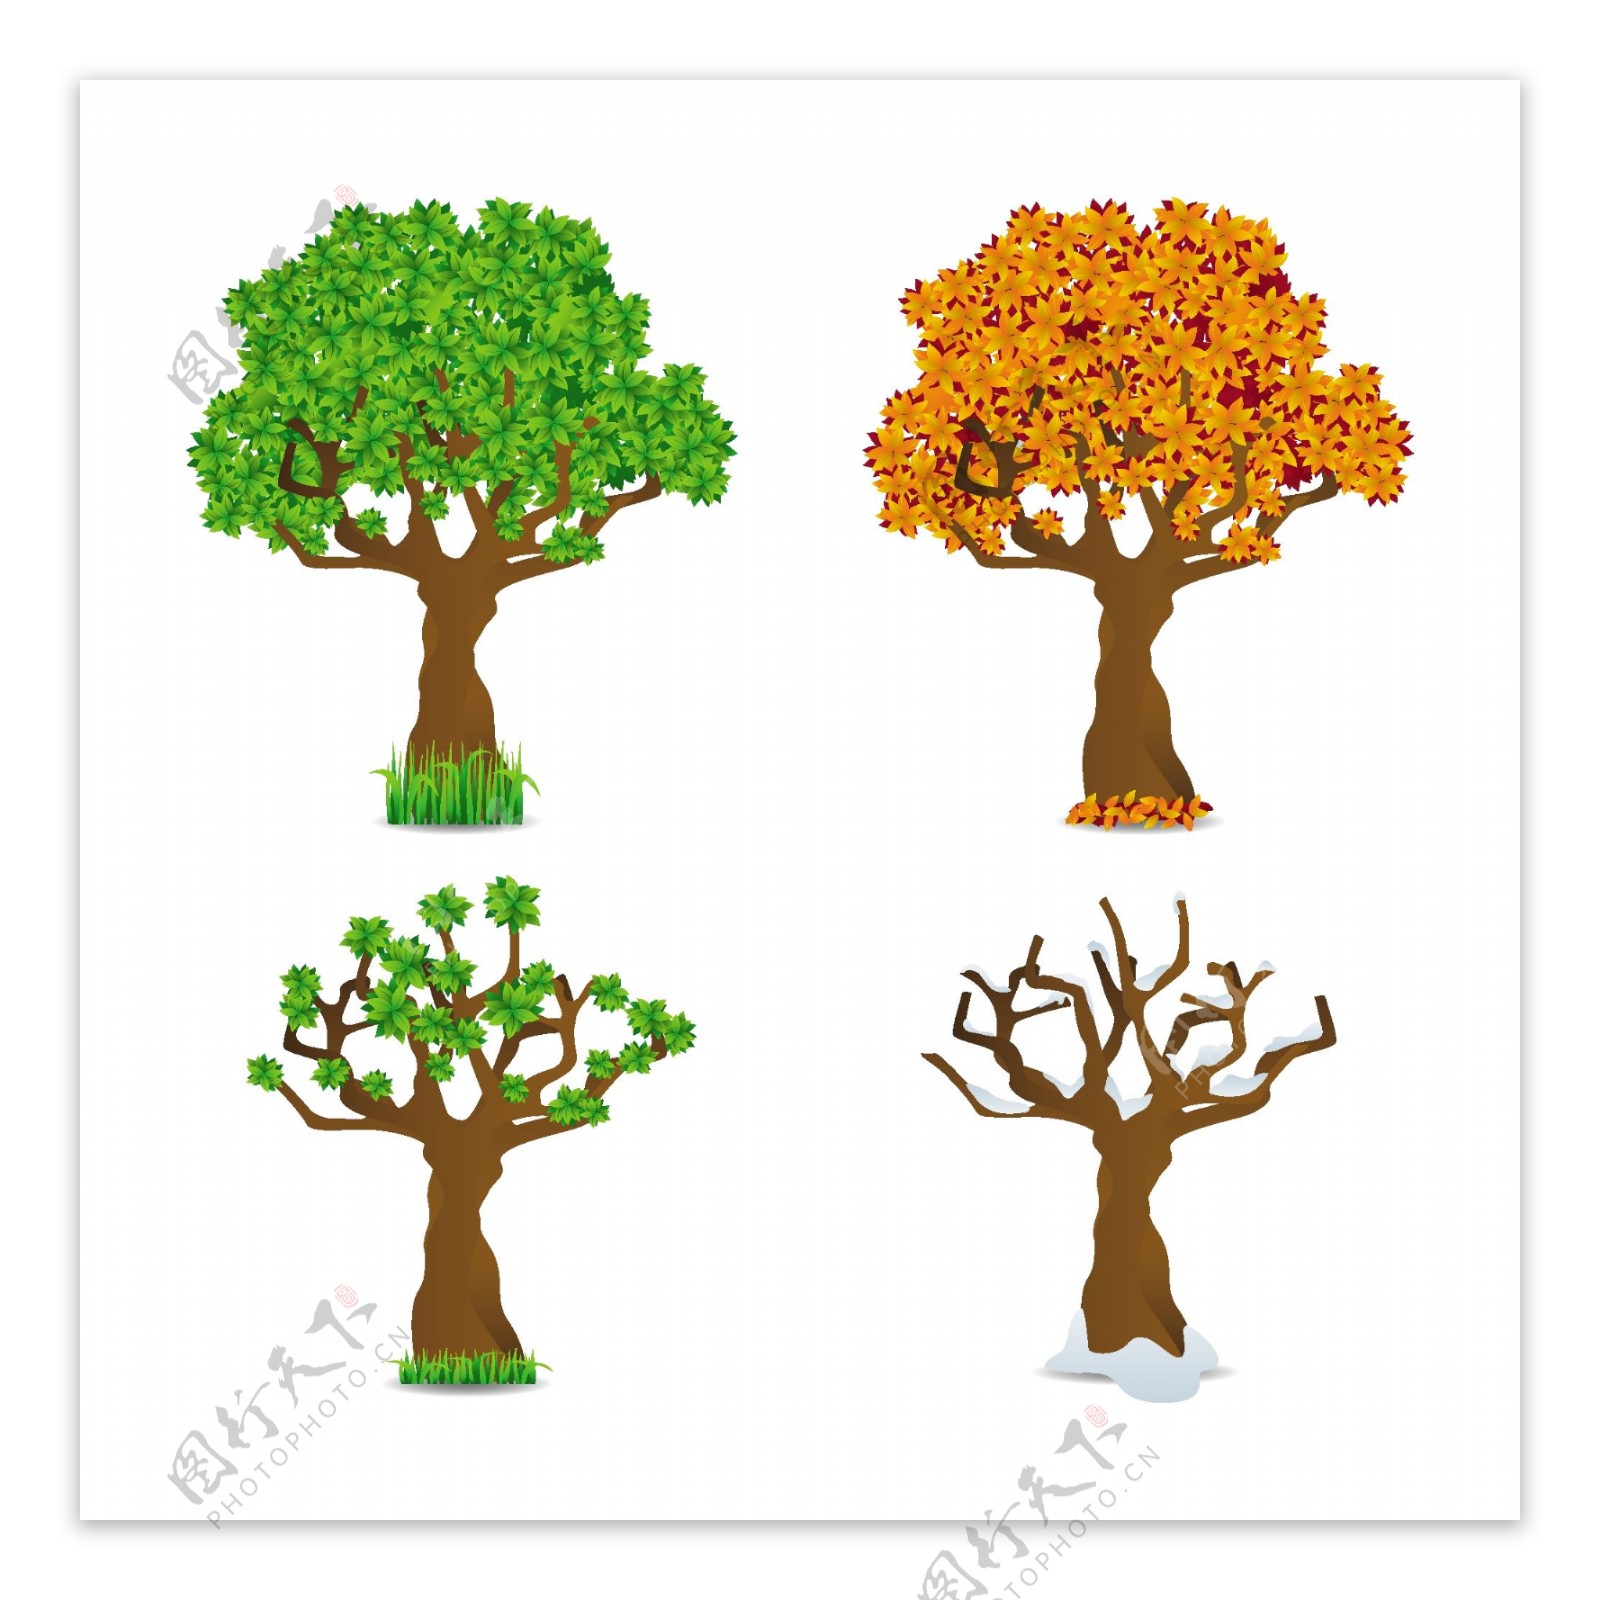 四个季节树横幅集春夏秋冬树木变化过程矢量素材